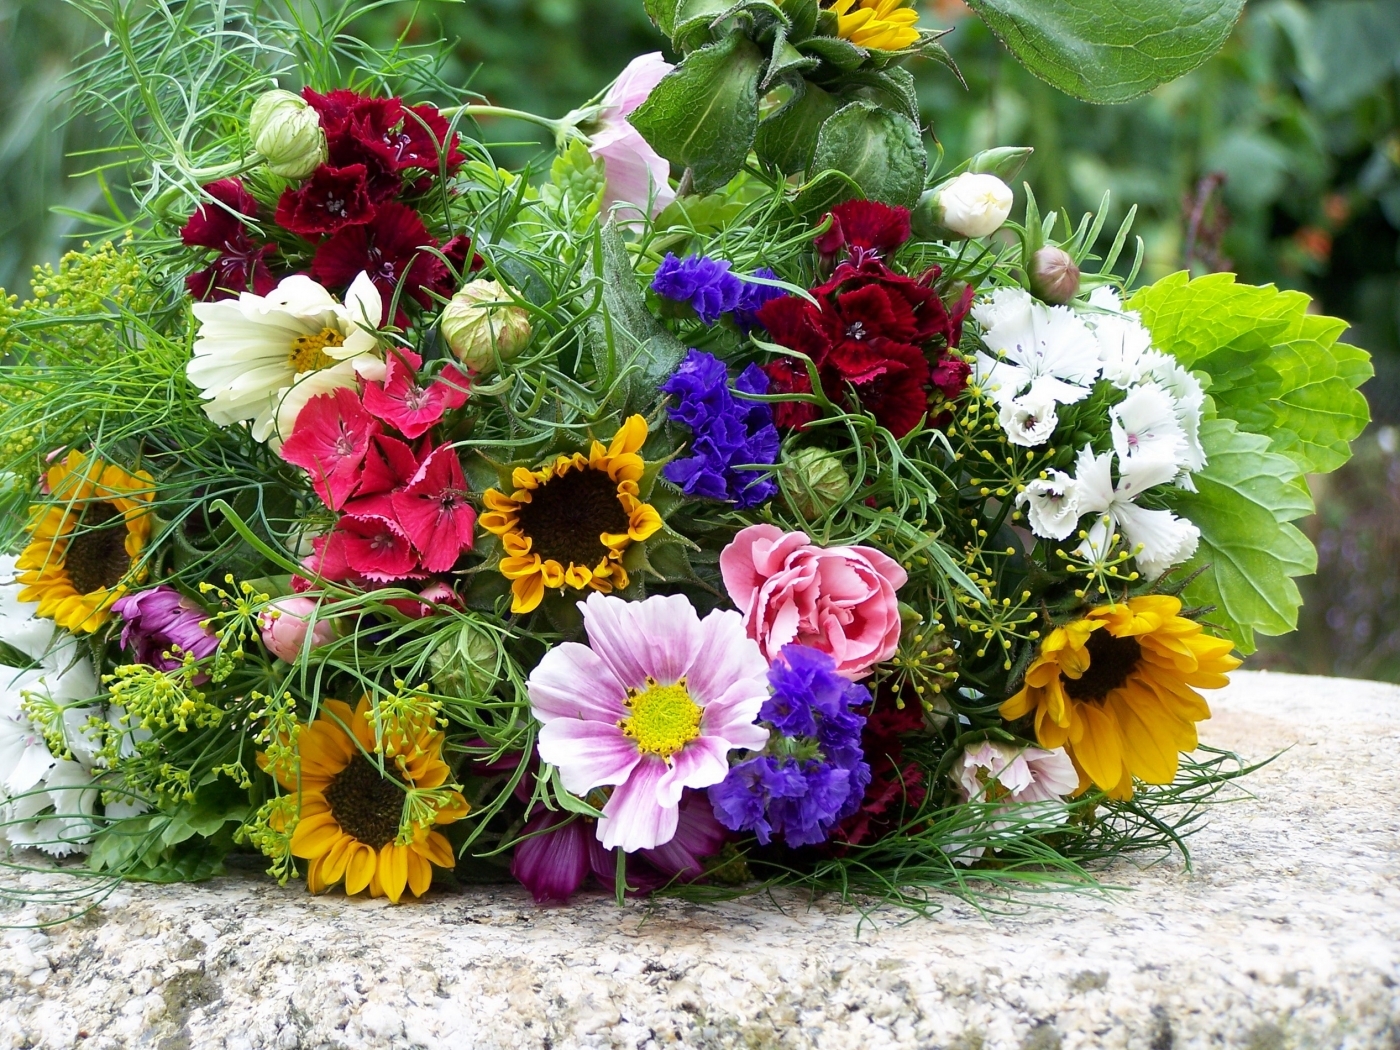 Descarga gratuita de fondo de pantalla para móvil de Plantas, Flores, Bouquets.